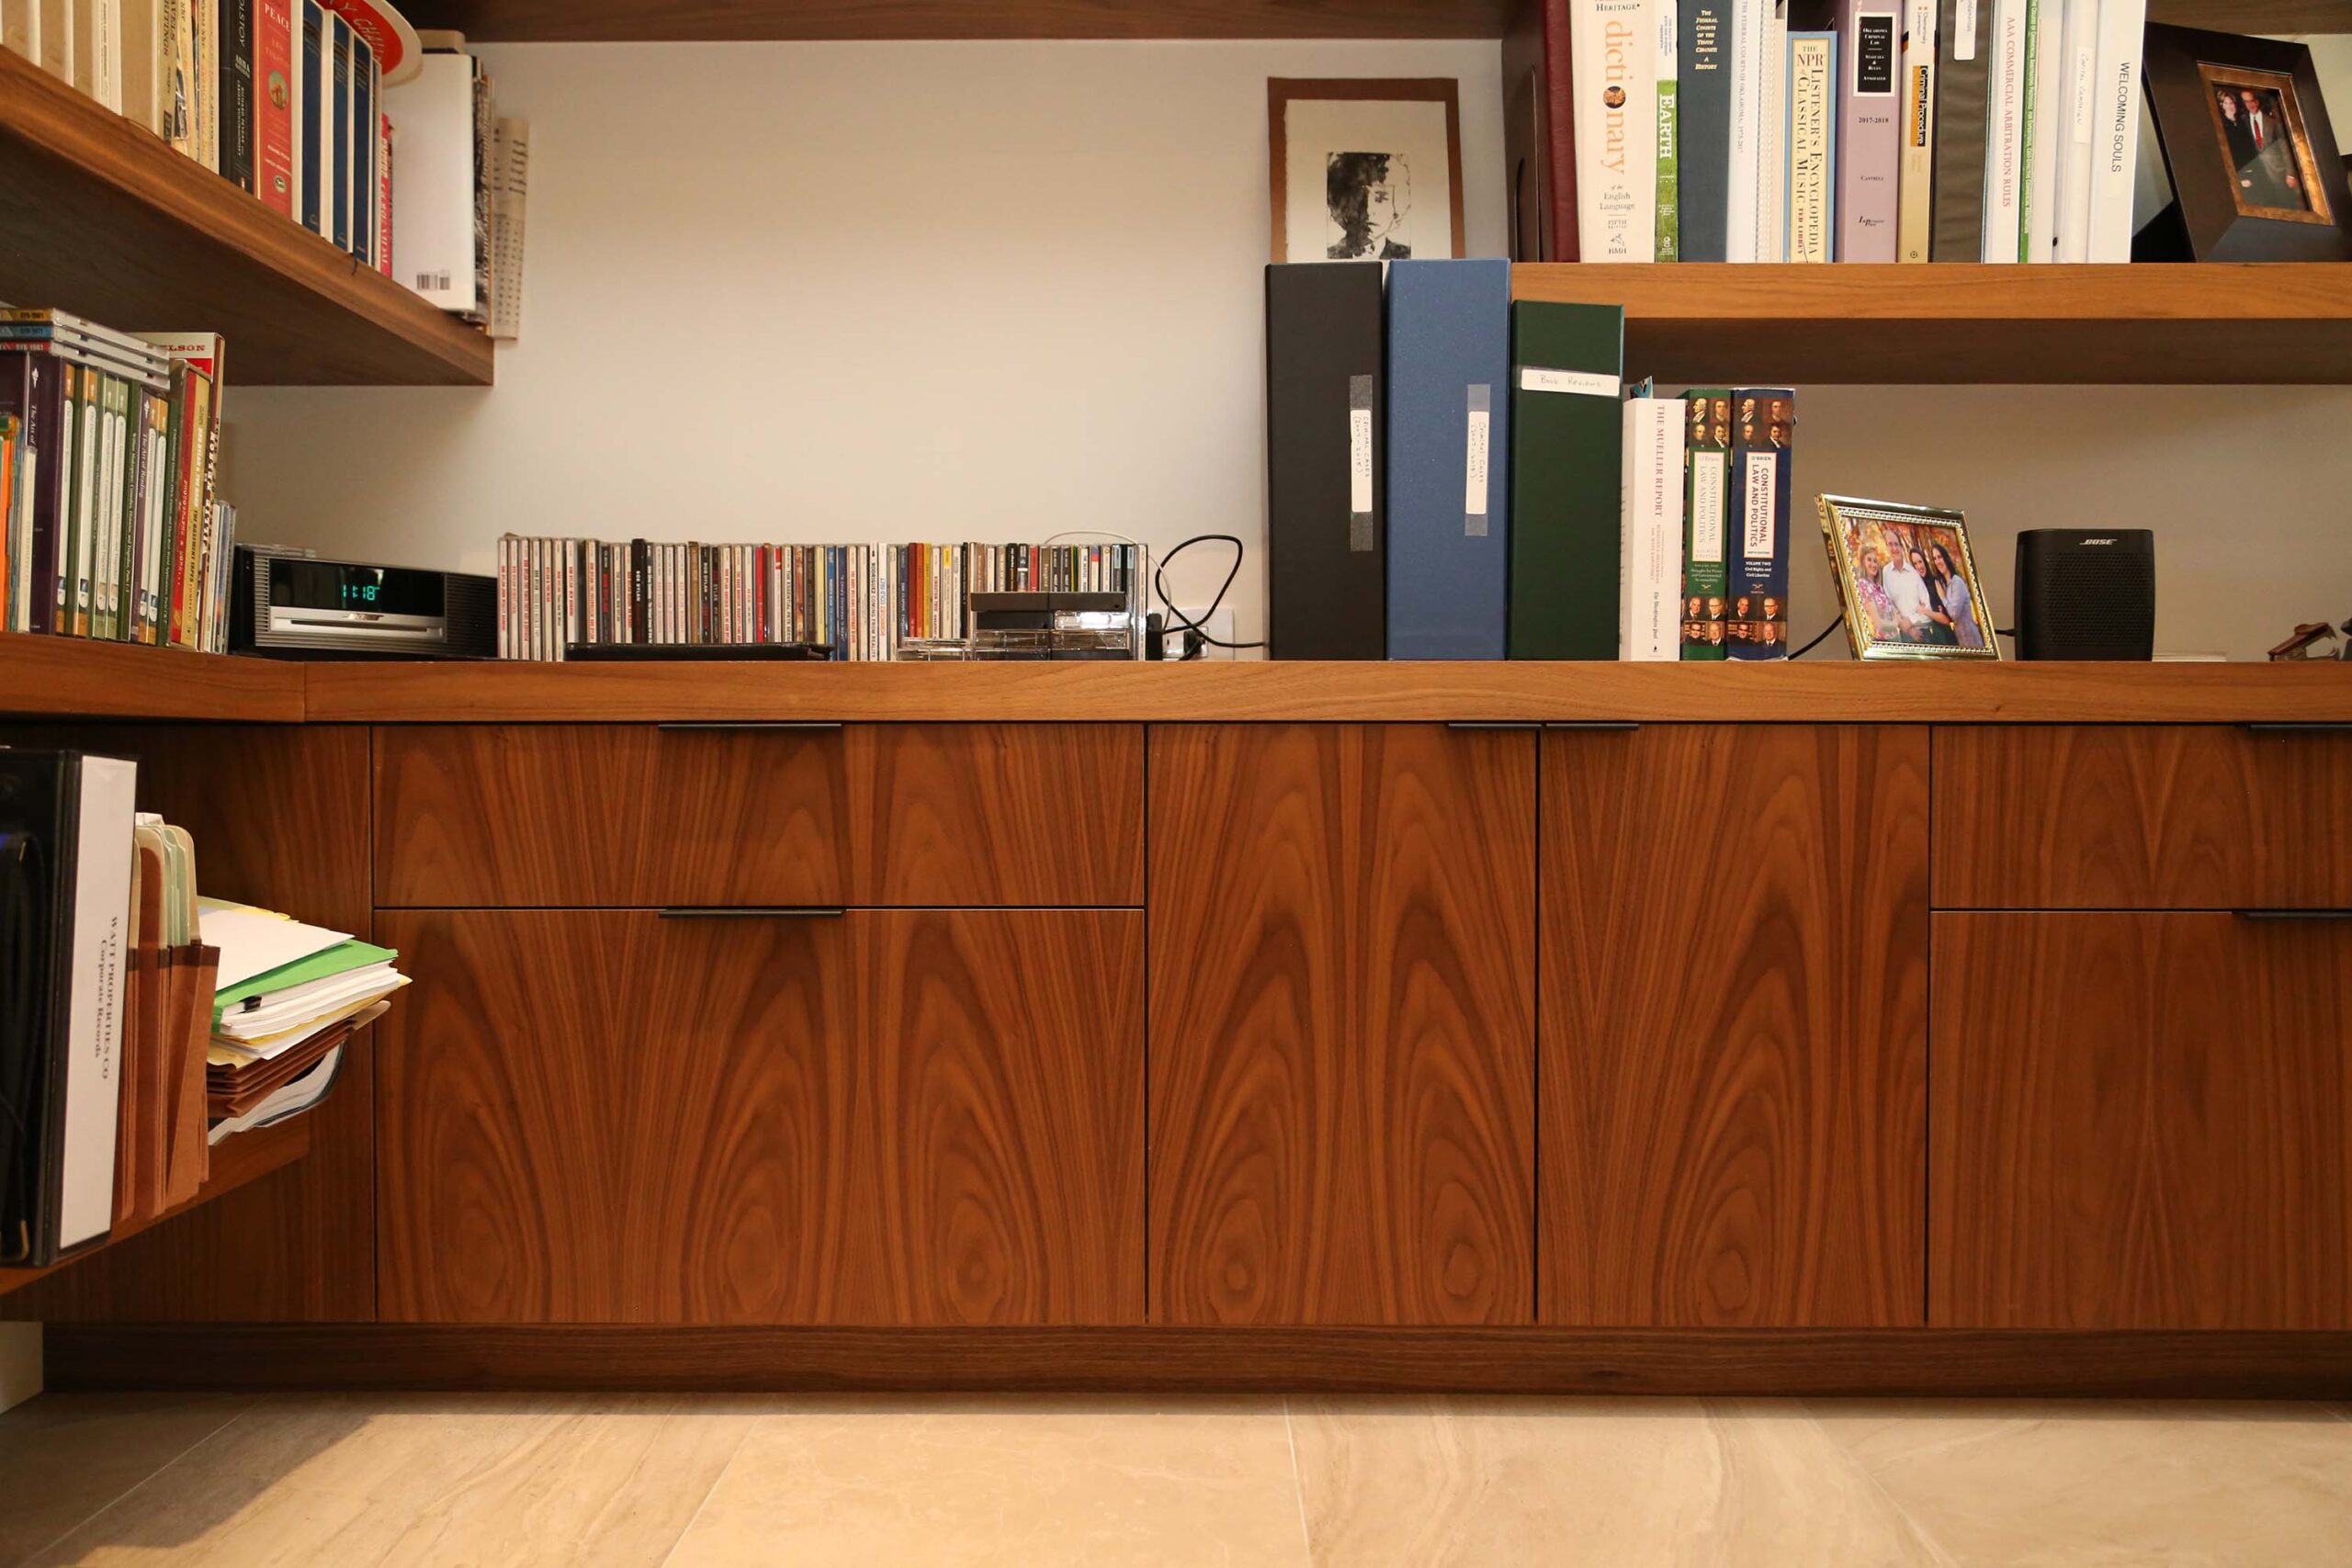 Base Drawer Door Storage Floating Book Shelves Wood Grain Finish Elite Cabinets Tulsa Cabinet Designer